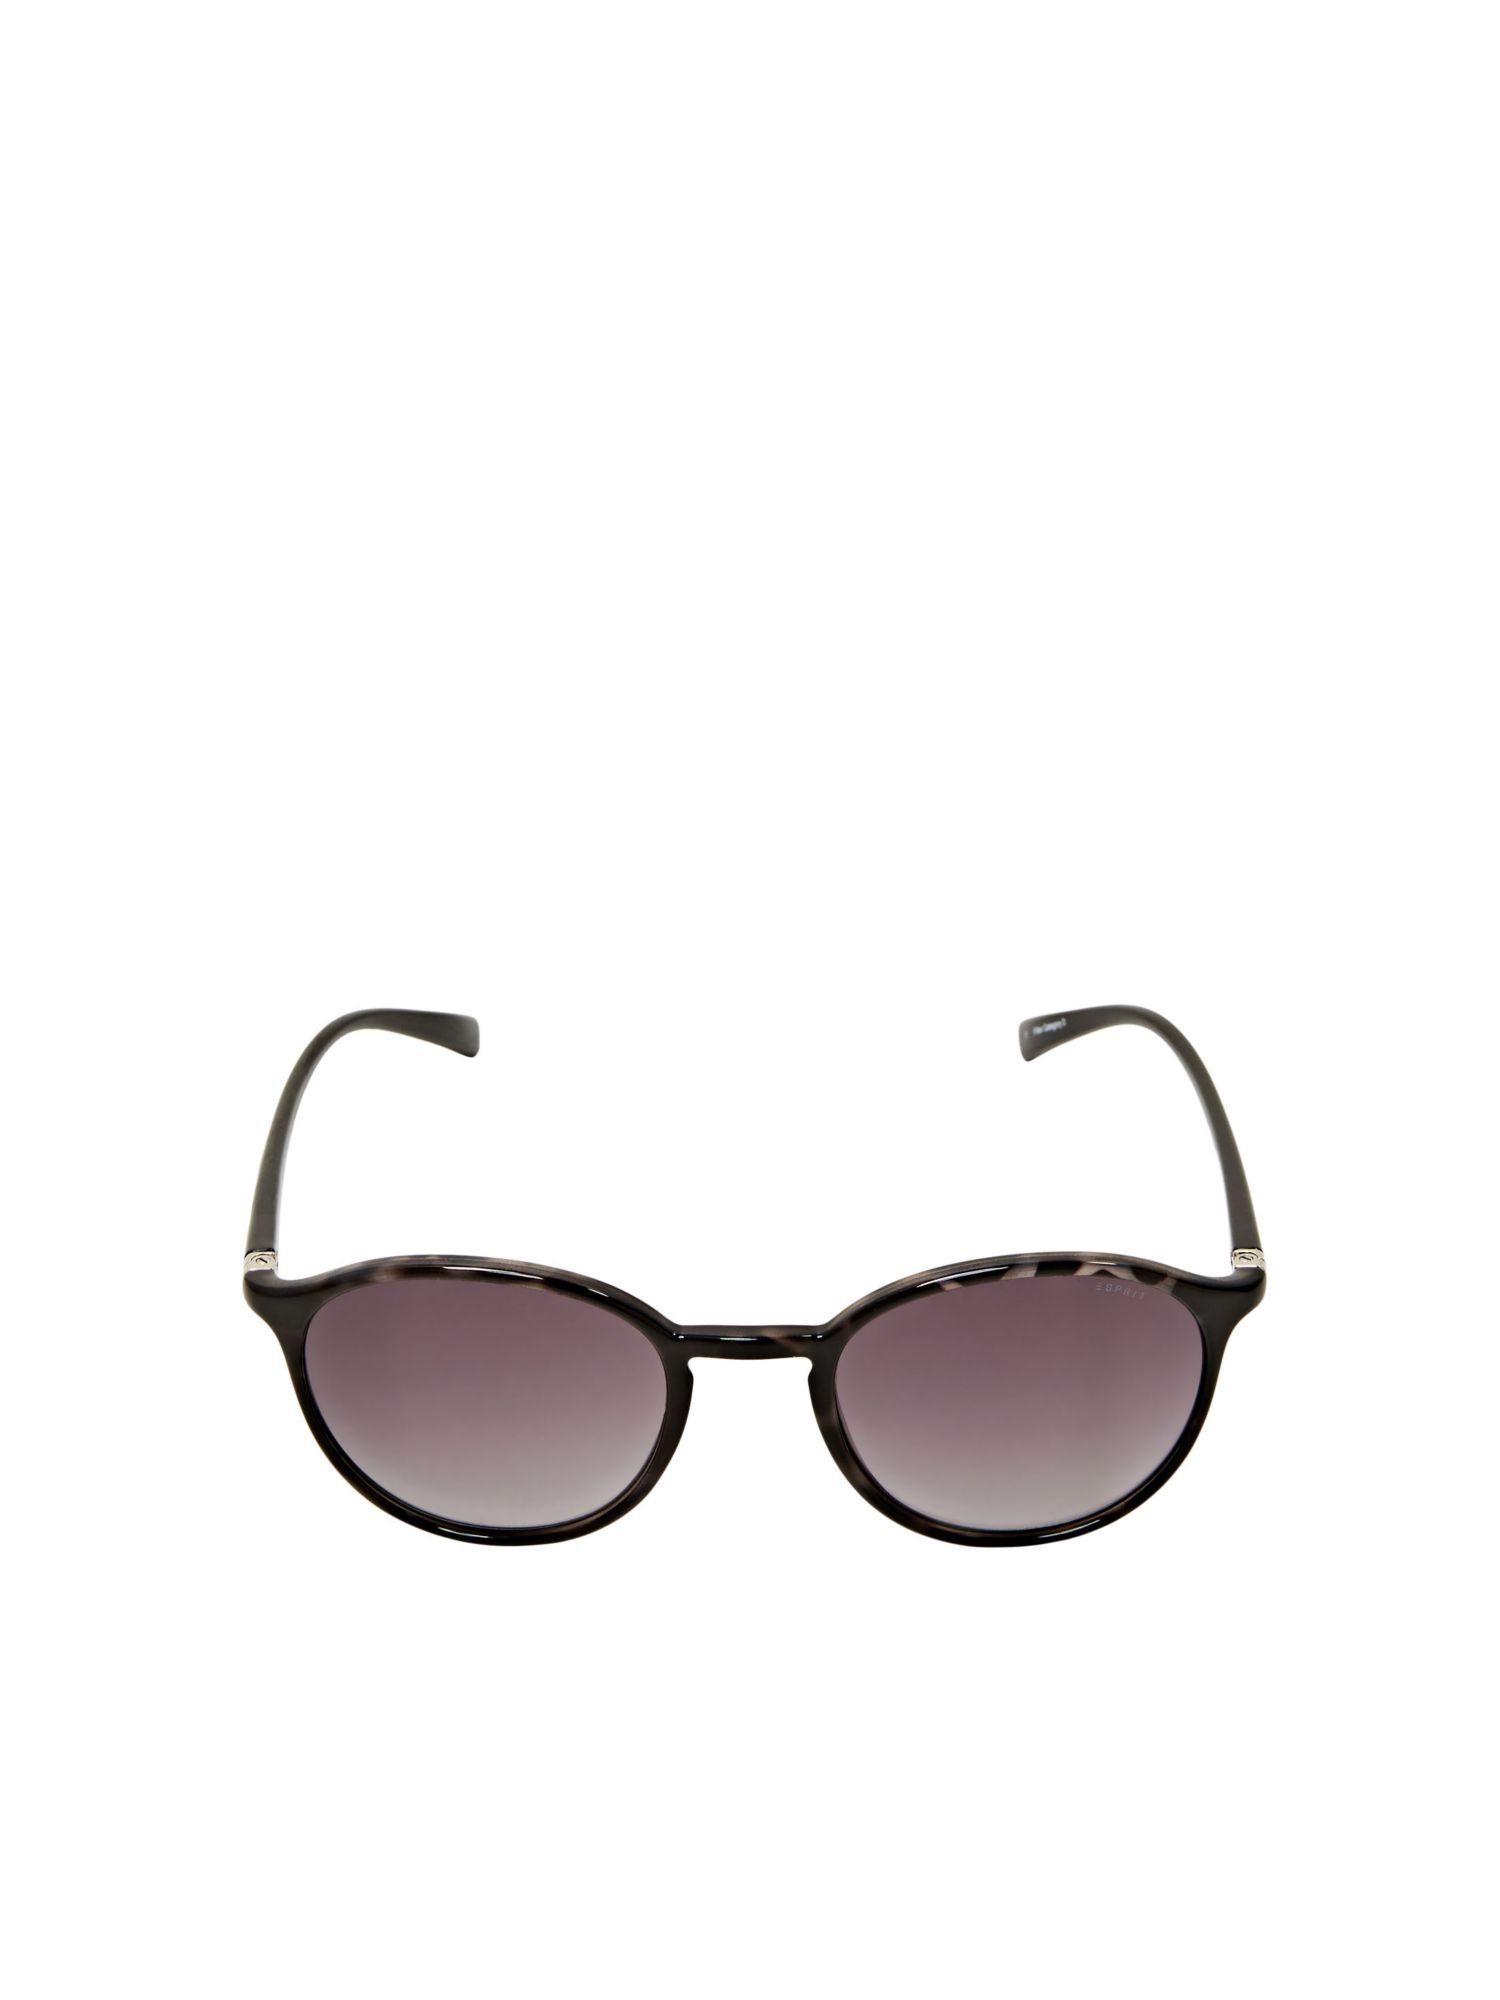 runden GRAY Verlaufsgläsern Unisex-Sonnenbrille Esprit Sonnenbrille mit